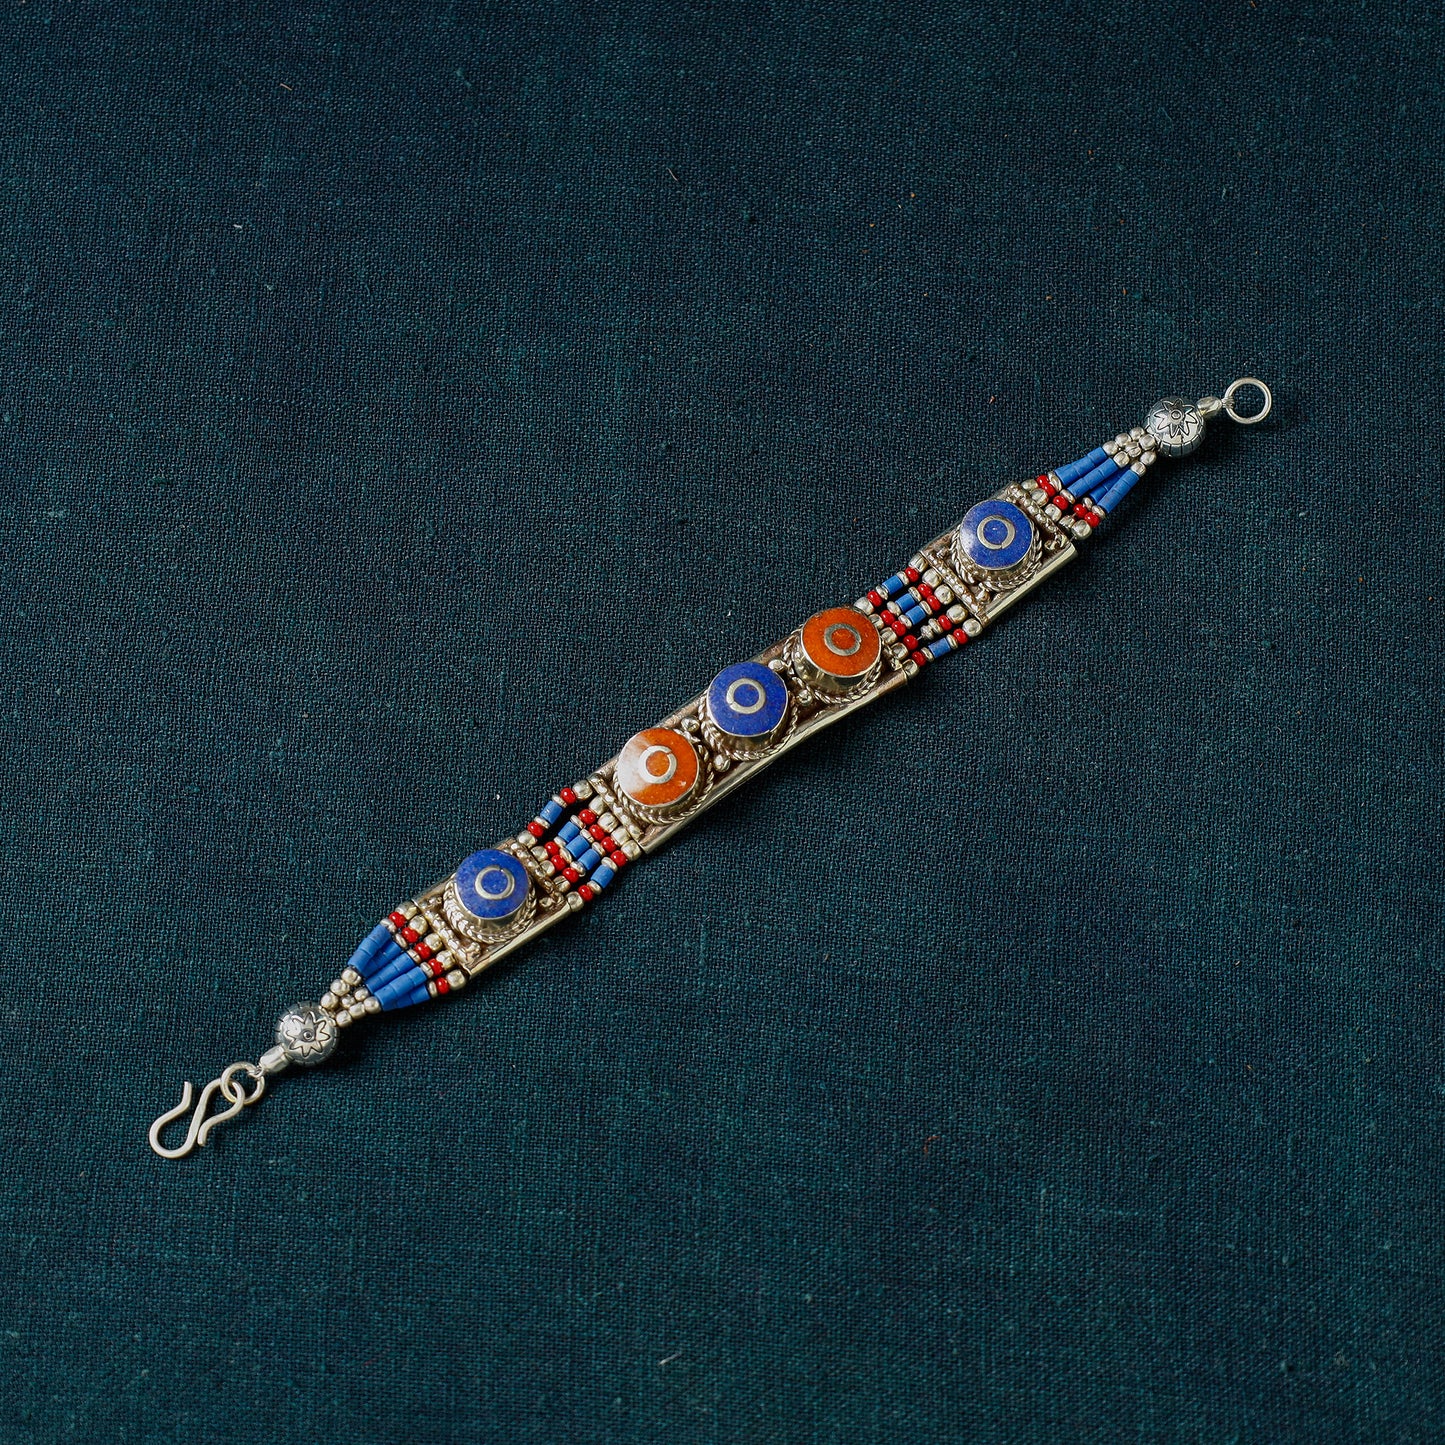 Ethnic Tribal Tibetan Bracelet from Himalaya